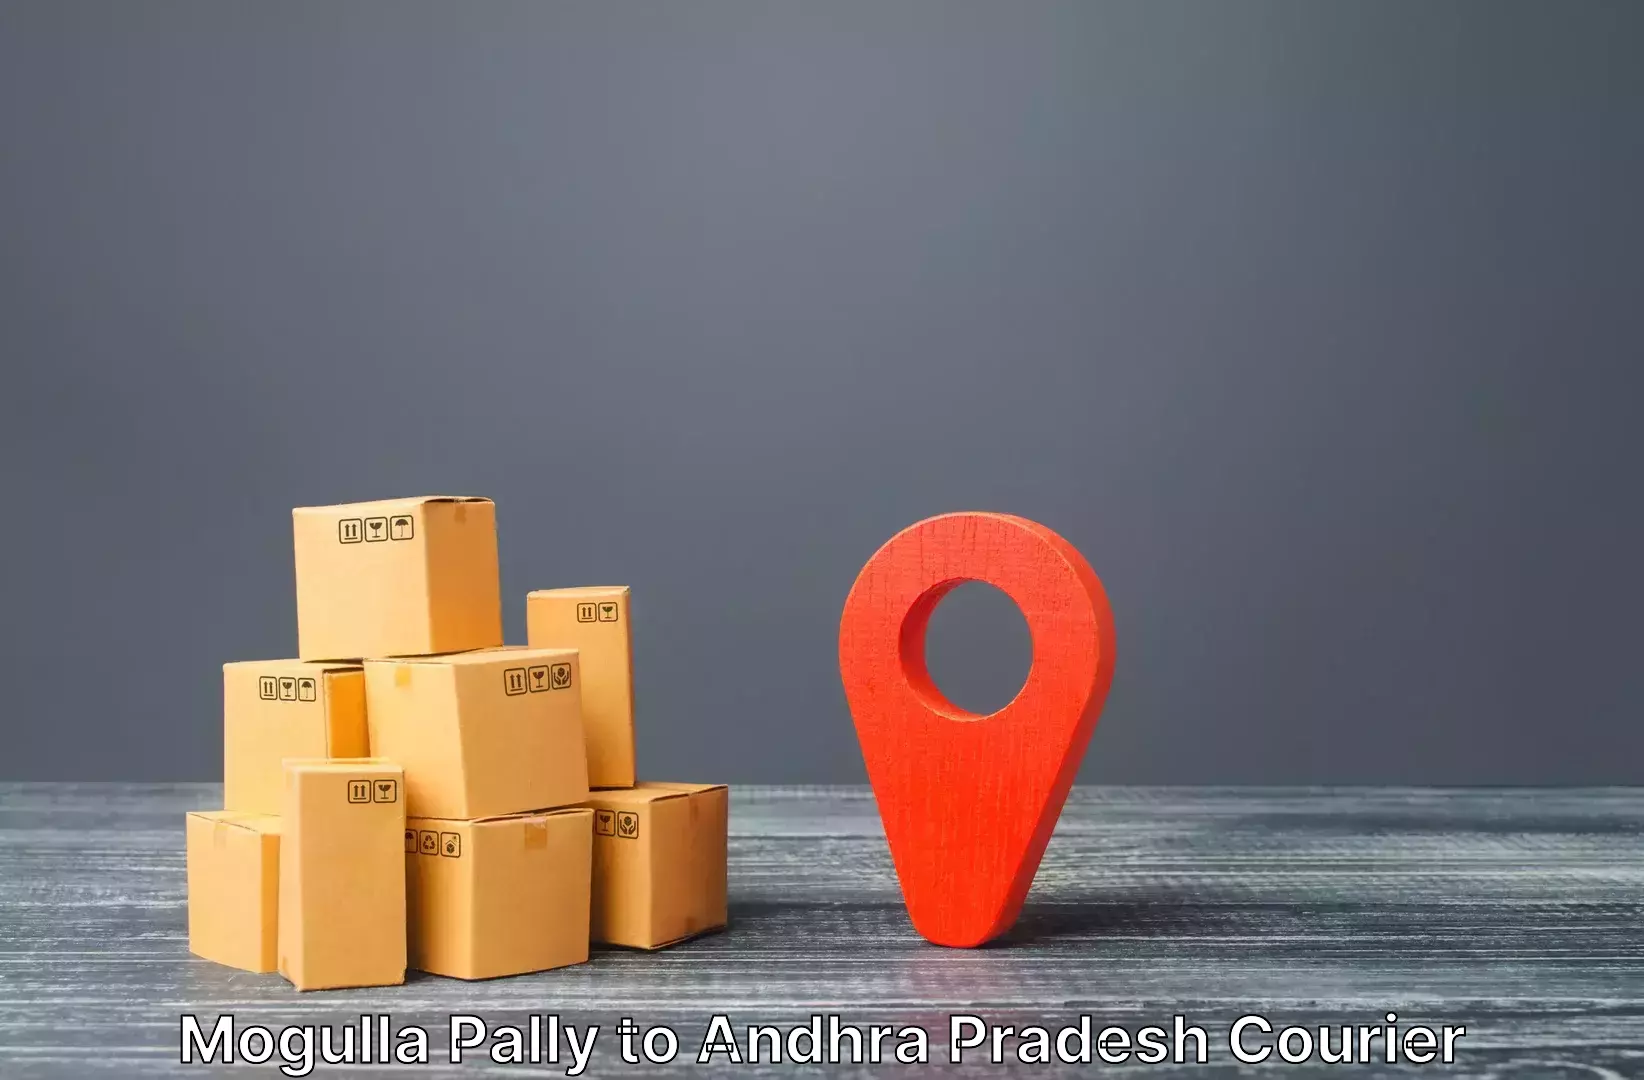 Luggage shipment specialists Mogulla Pally to Malikipuram